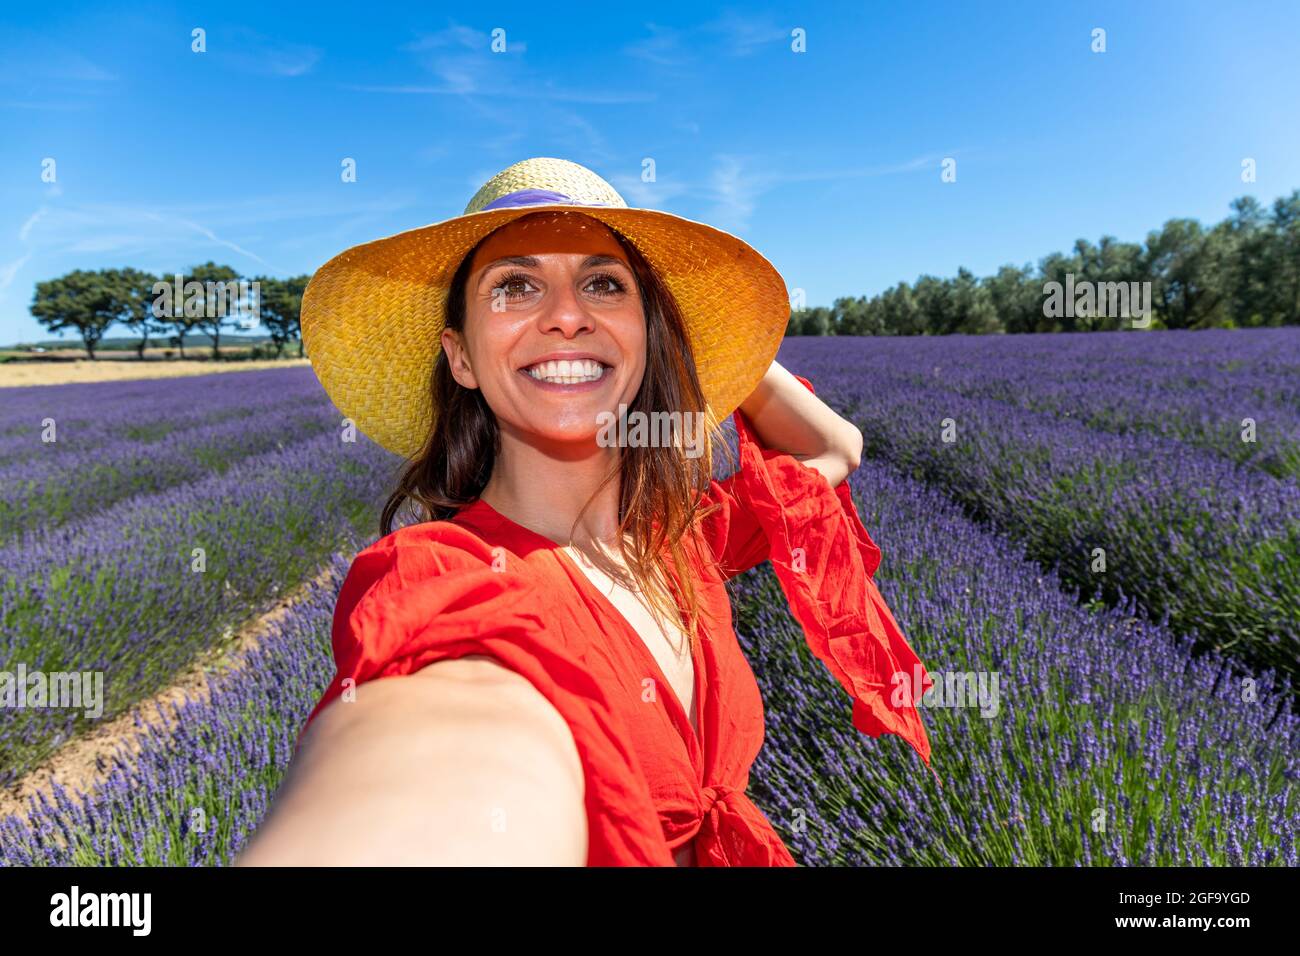 Junge lächelnde Frau mit einem Strohhut, die ein Selfie in einem blühenden Lavendelfeld nimmt. Konzept von Glück und Wohlbefinden. Stockfoto